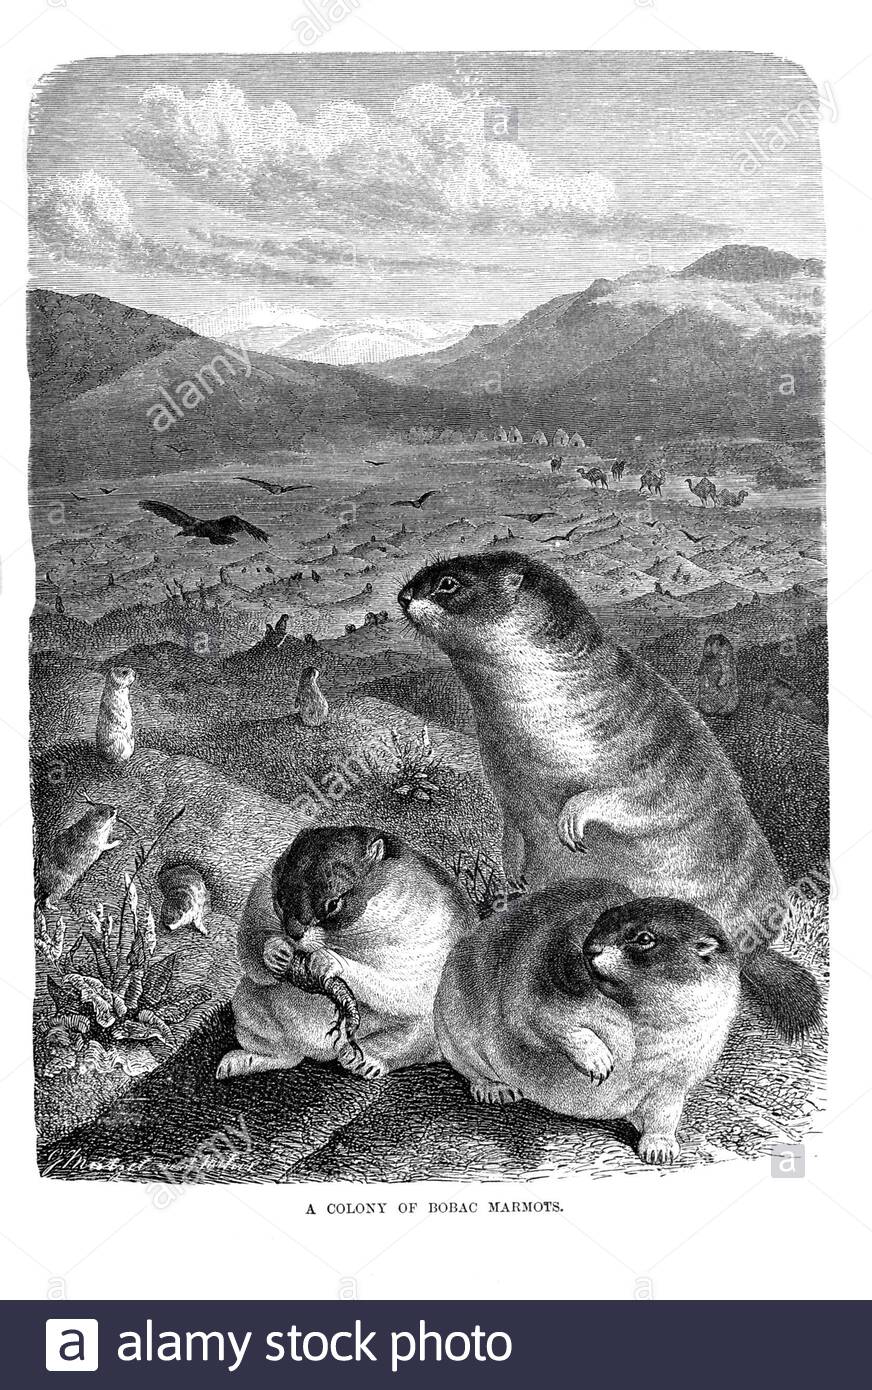 Kolonie der Bobac Murmeltiere, Vintage Illustration von 1894 Stockfoto